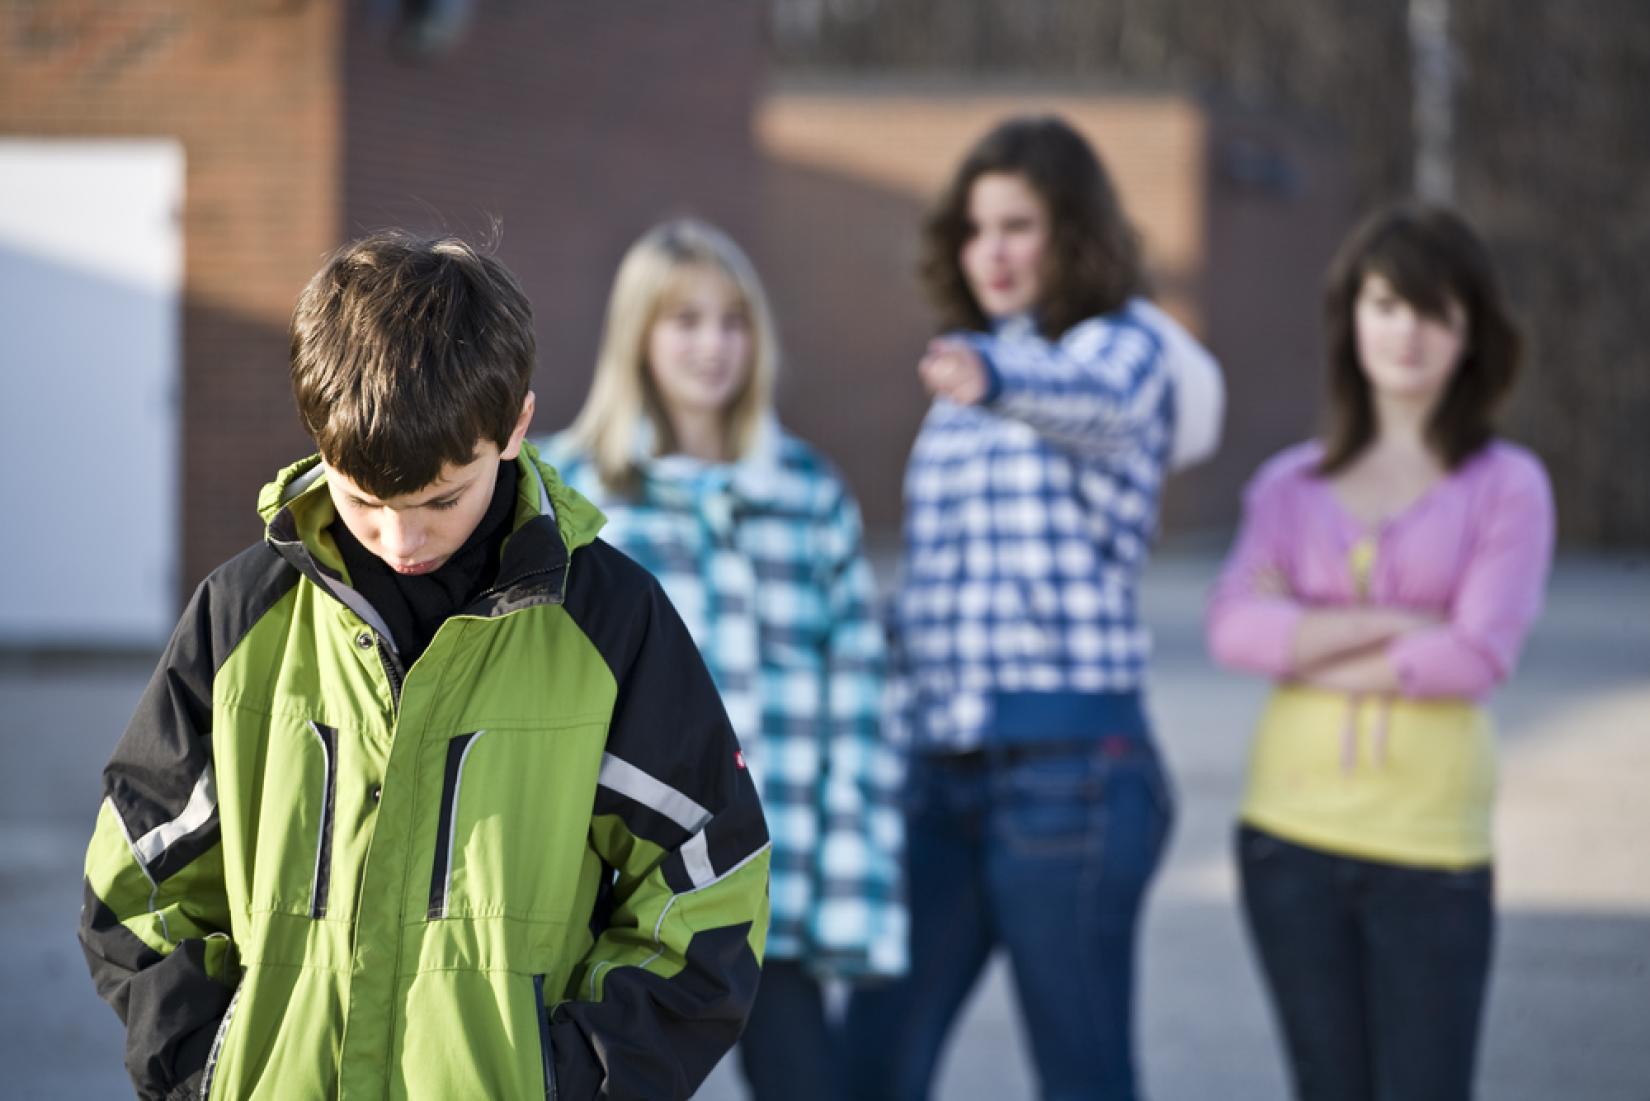 Um terço dos entrevistados disse acreditar que sofrer bullying é normal e, por isso, não contou a ninguém. Foto: Shutterstock / CC